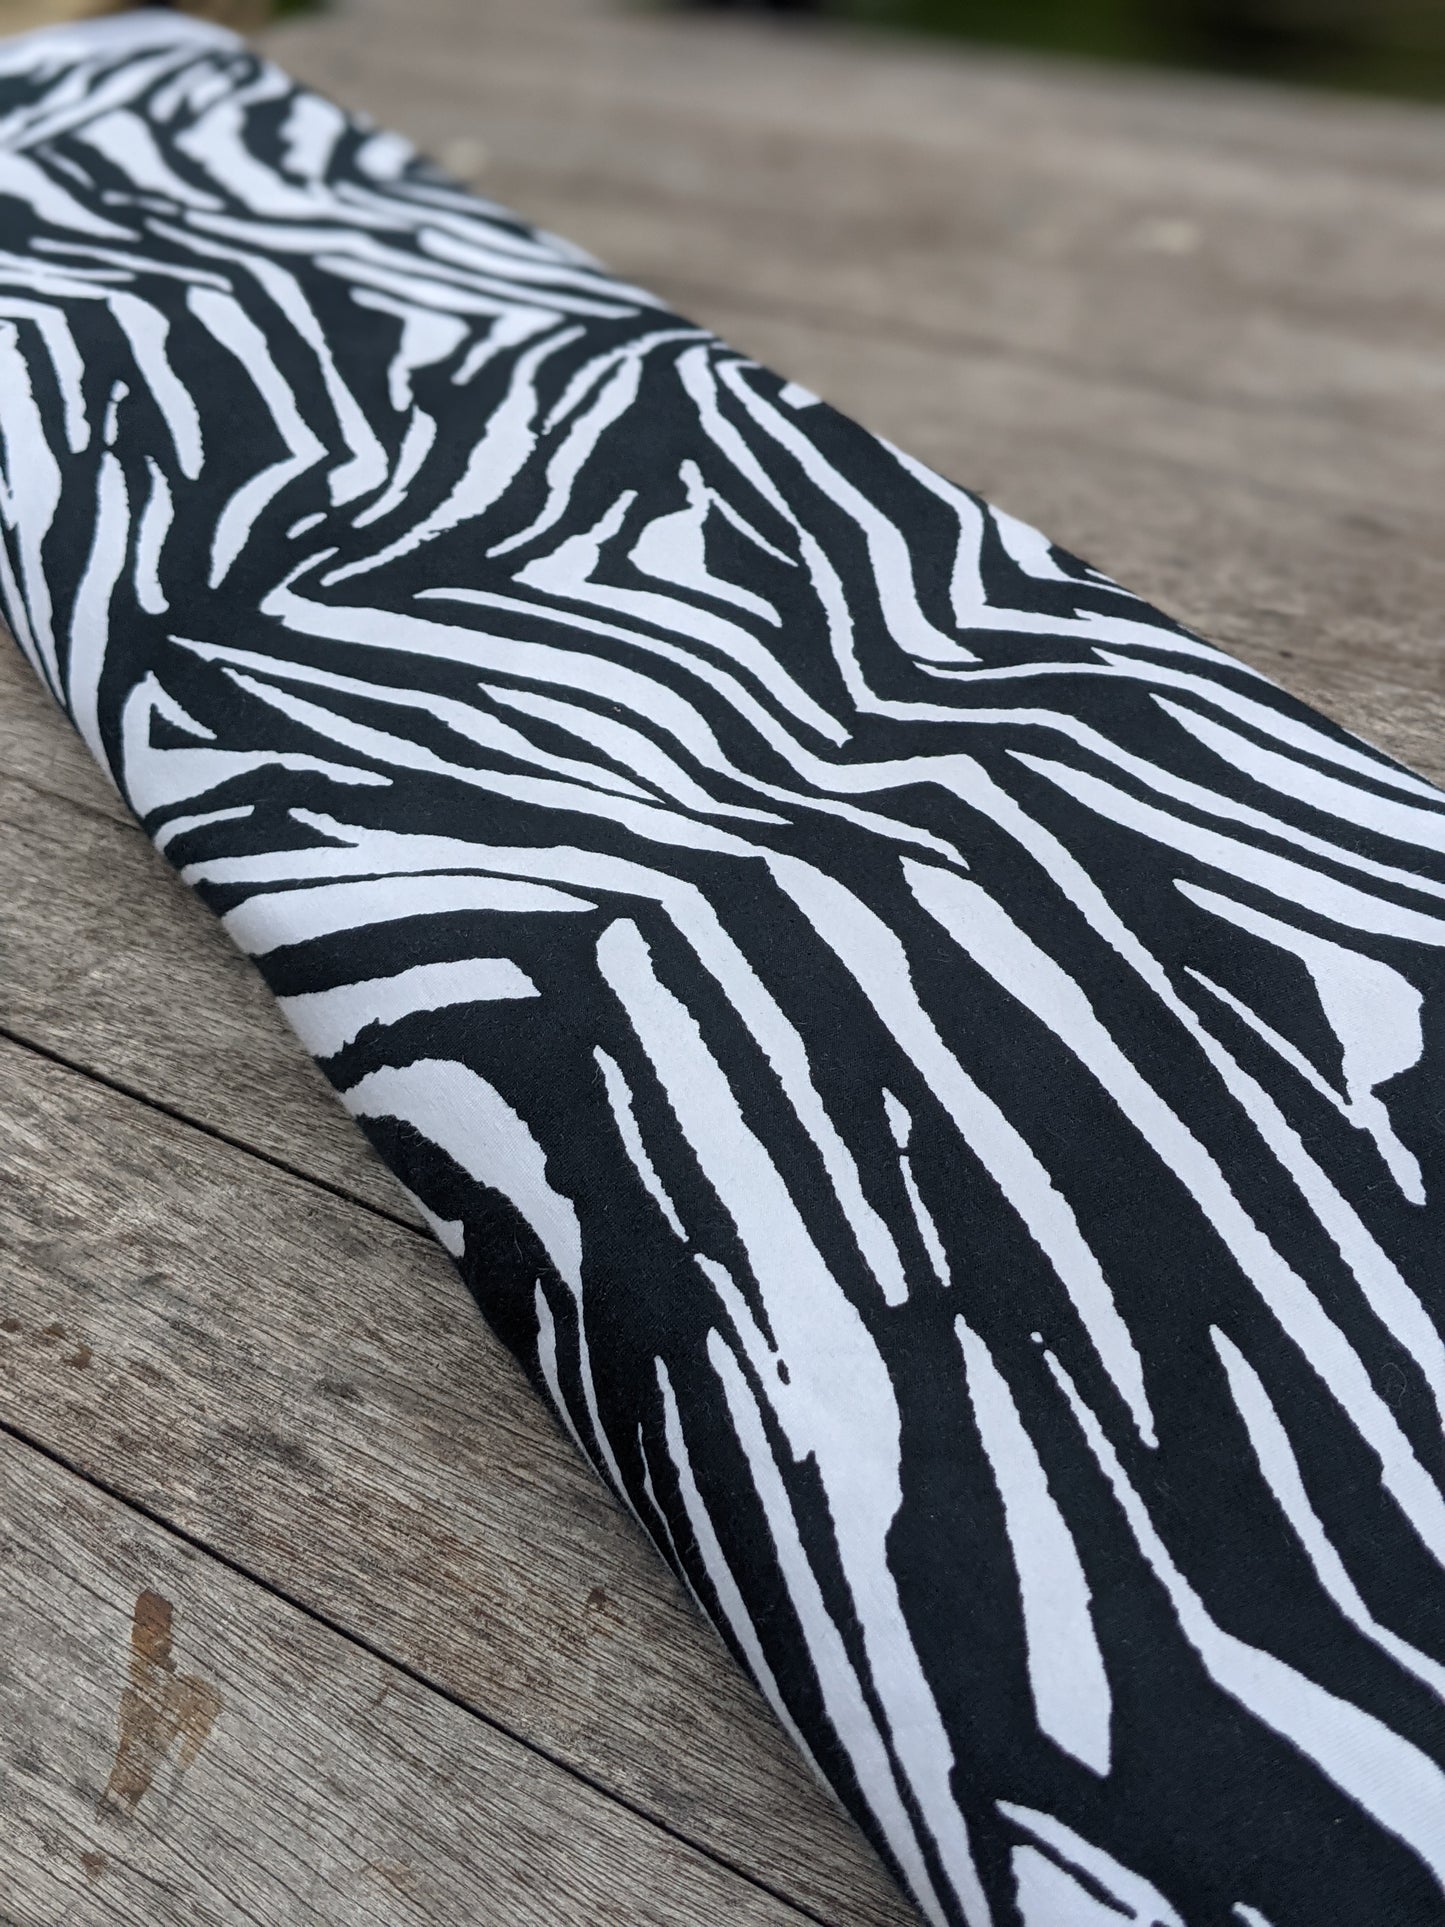 Australian Handmade Leggings (Adult - White Zebra)